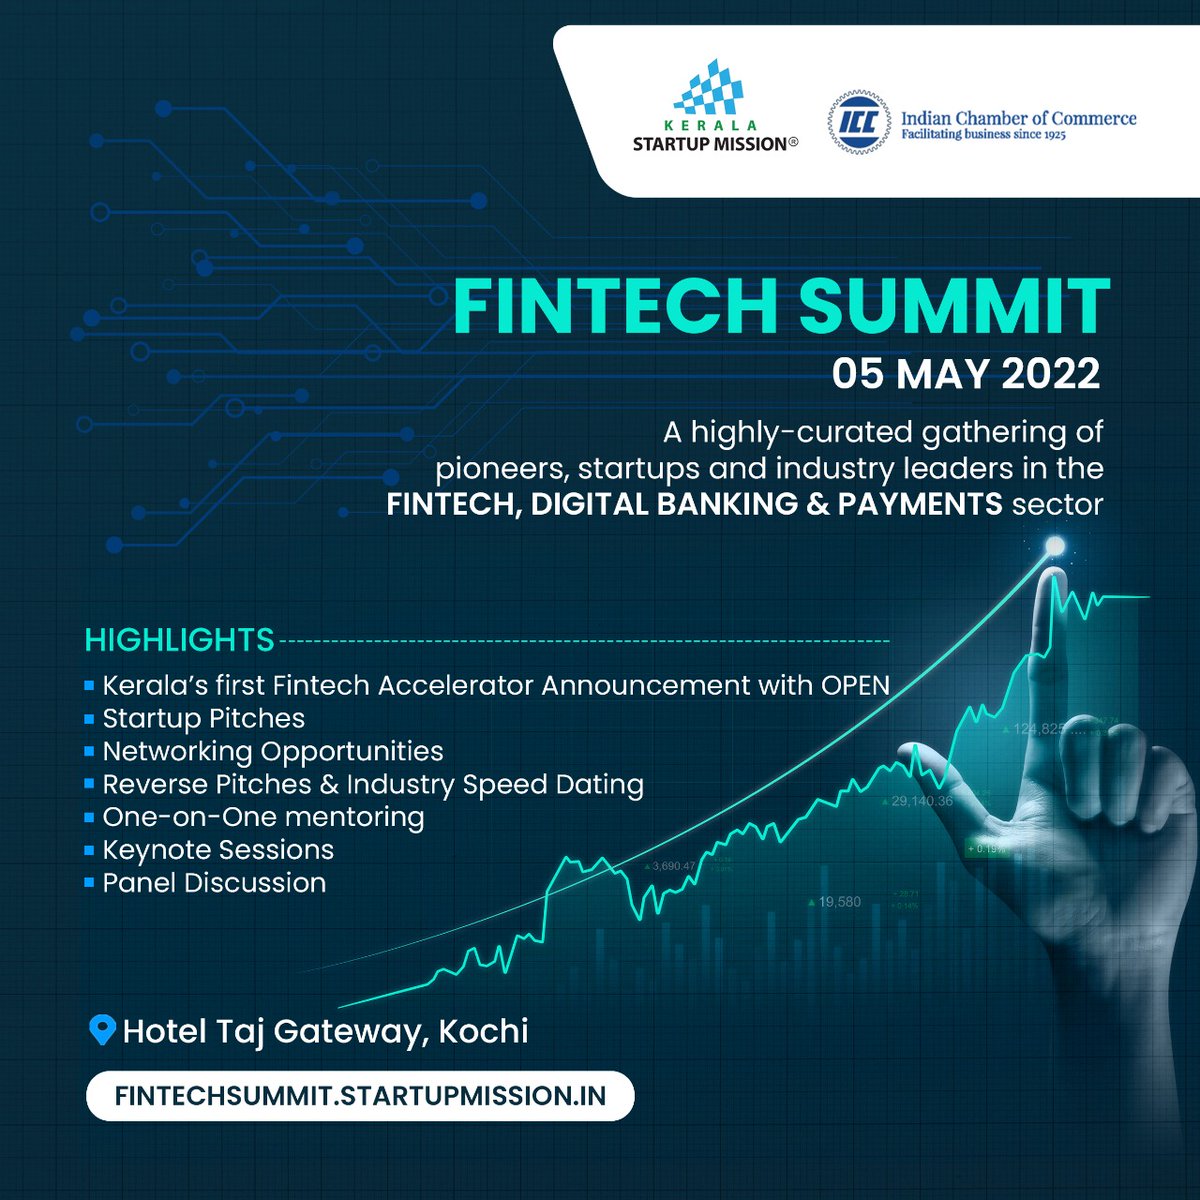 Fintech Summit 2022